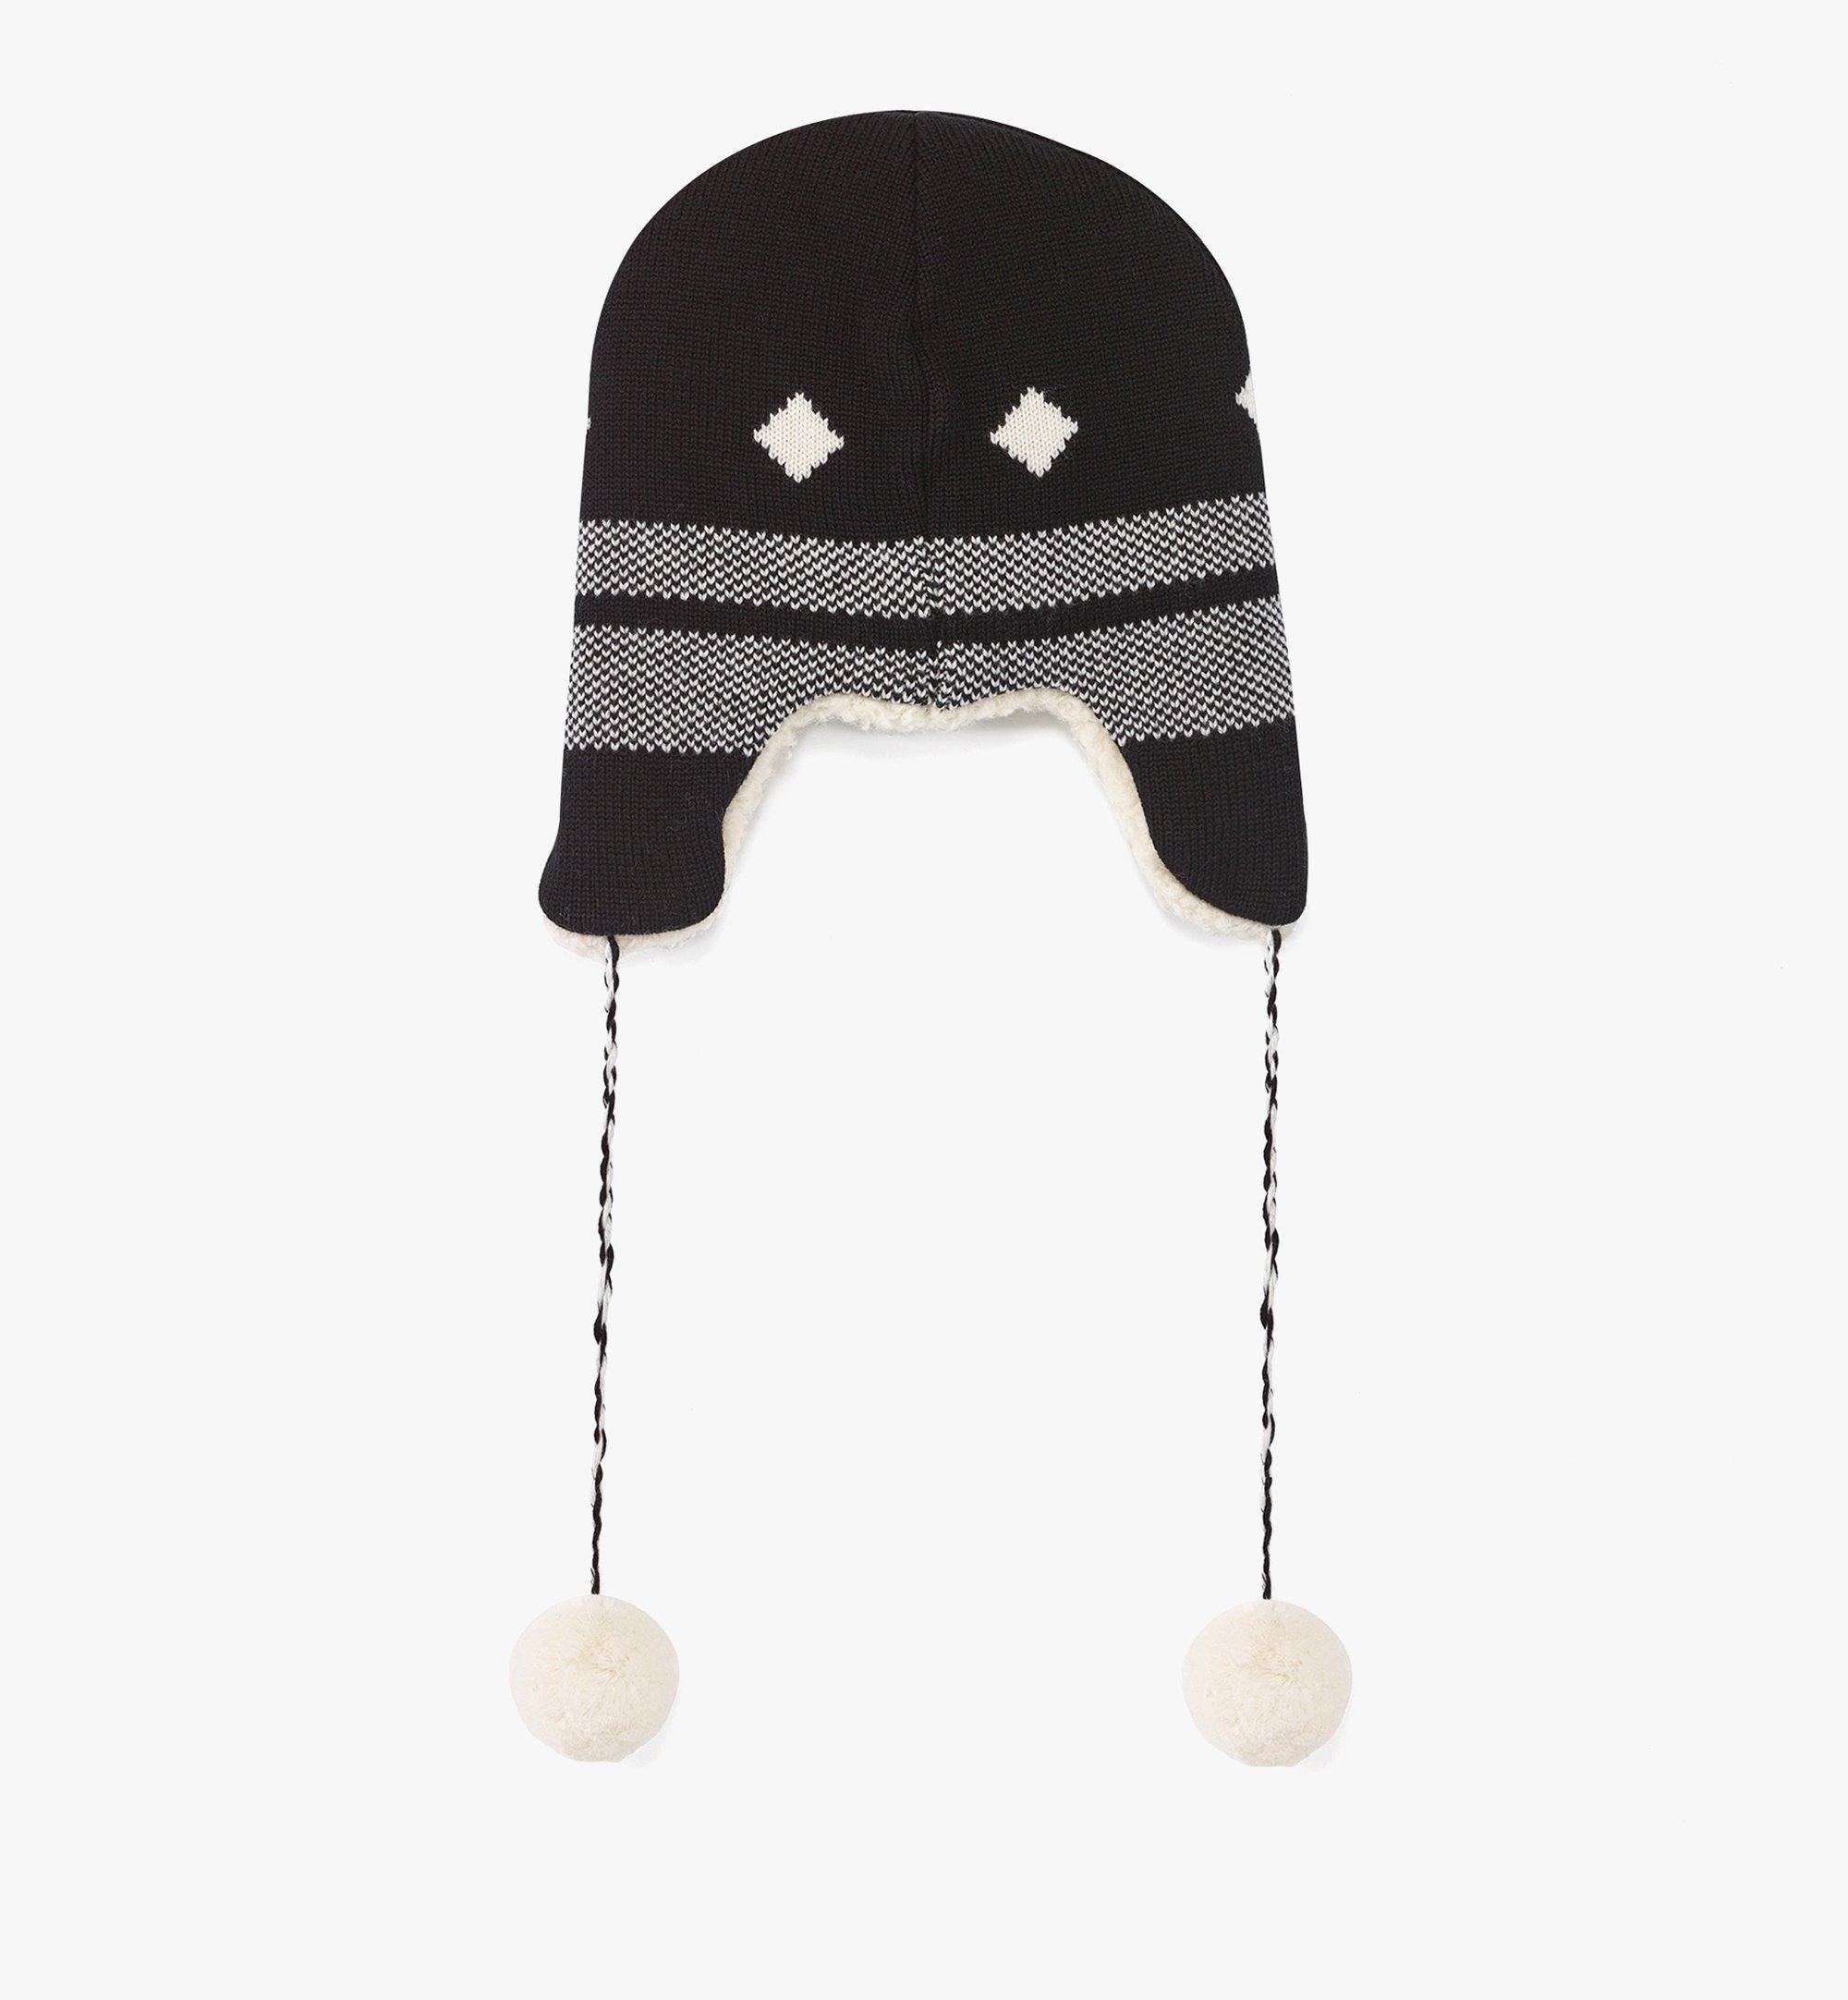 Reversible Shapka Hat in Après Ski Wool - 3